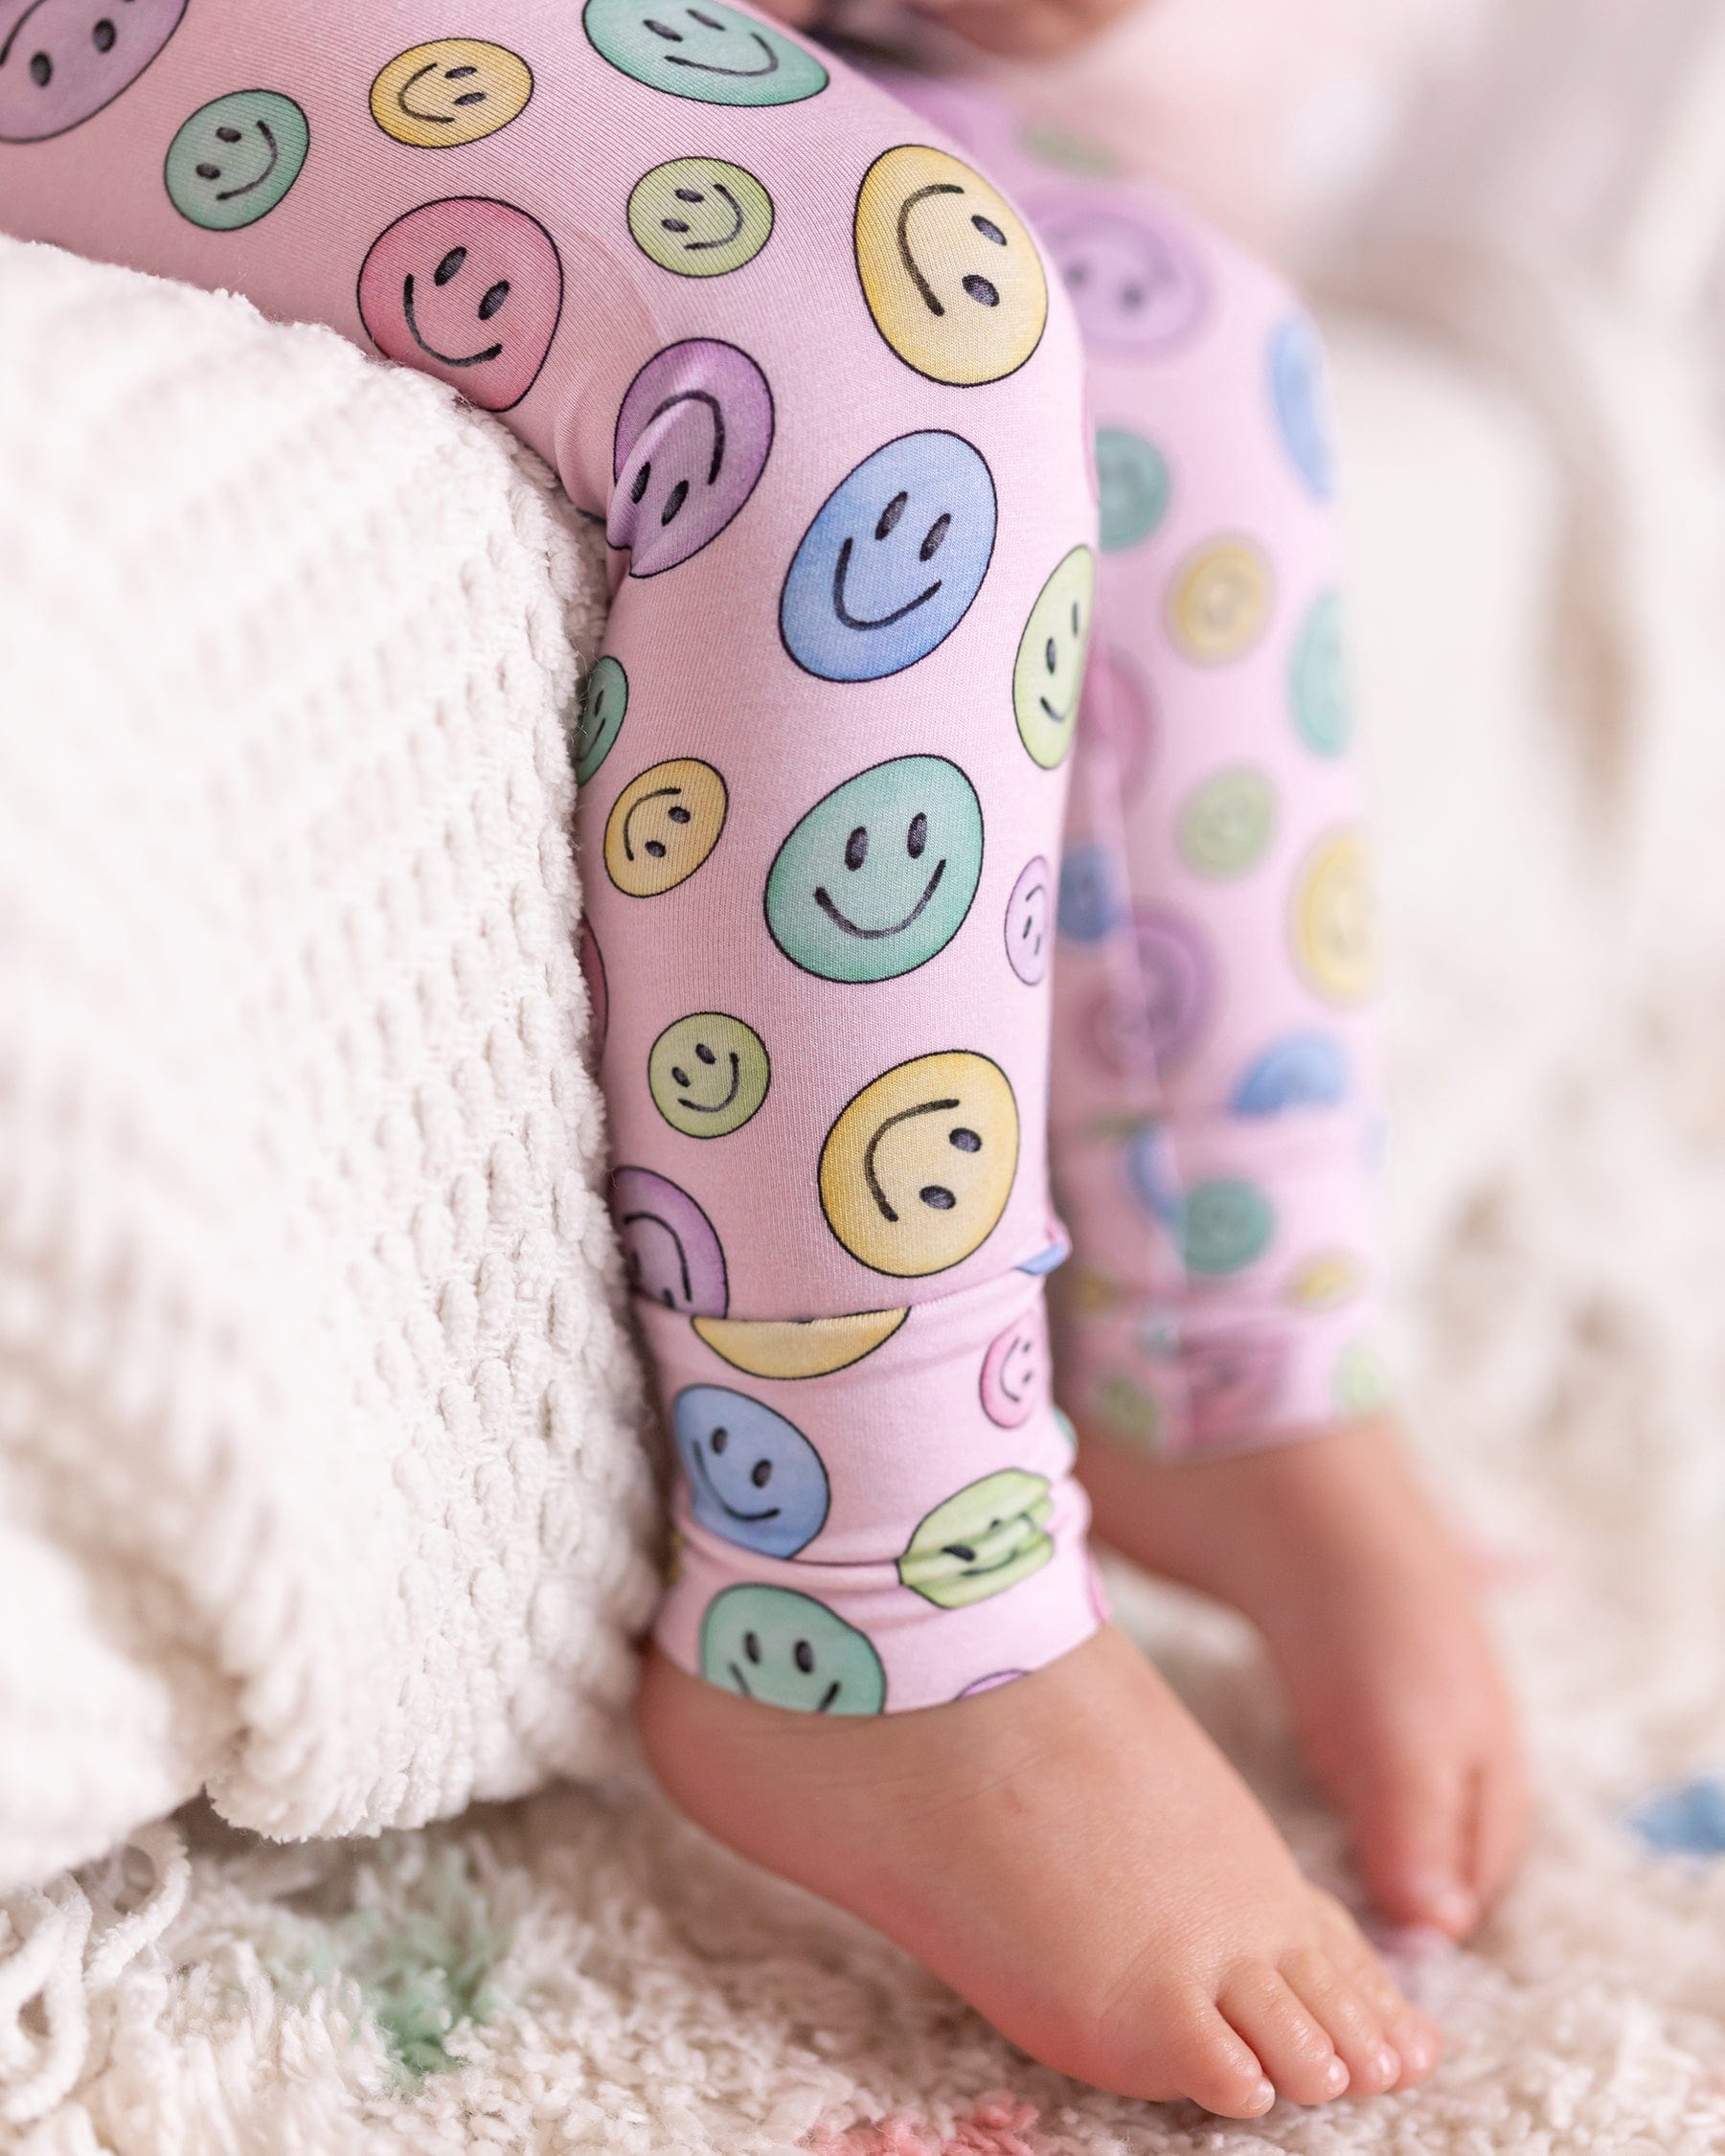 Smiley Pajama Set